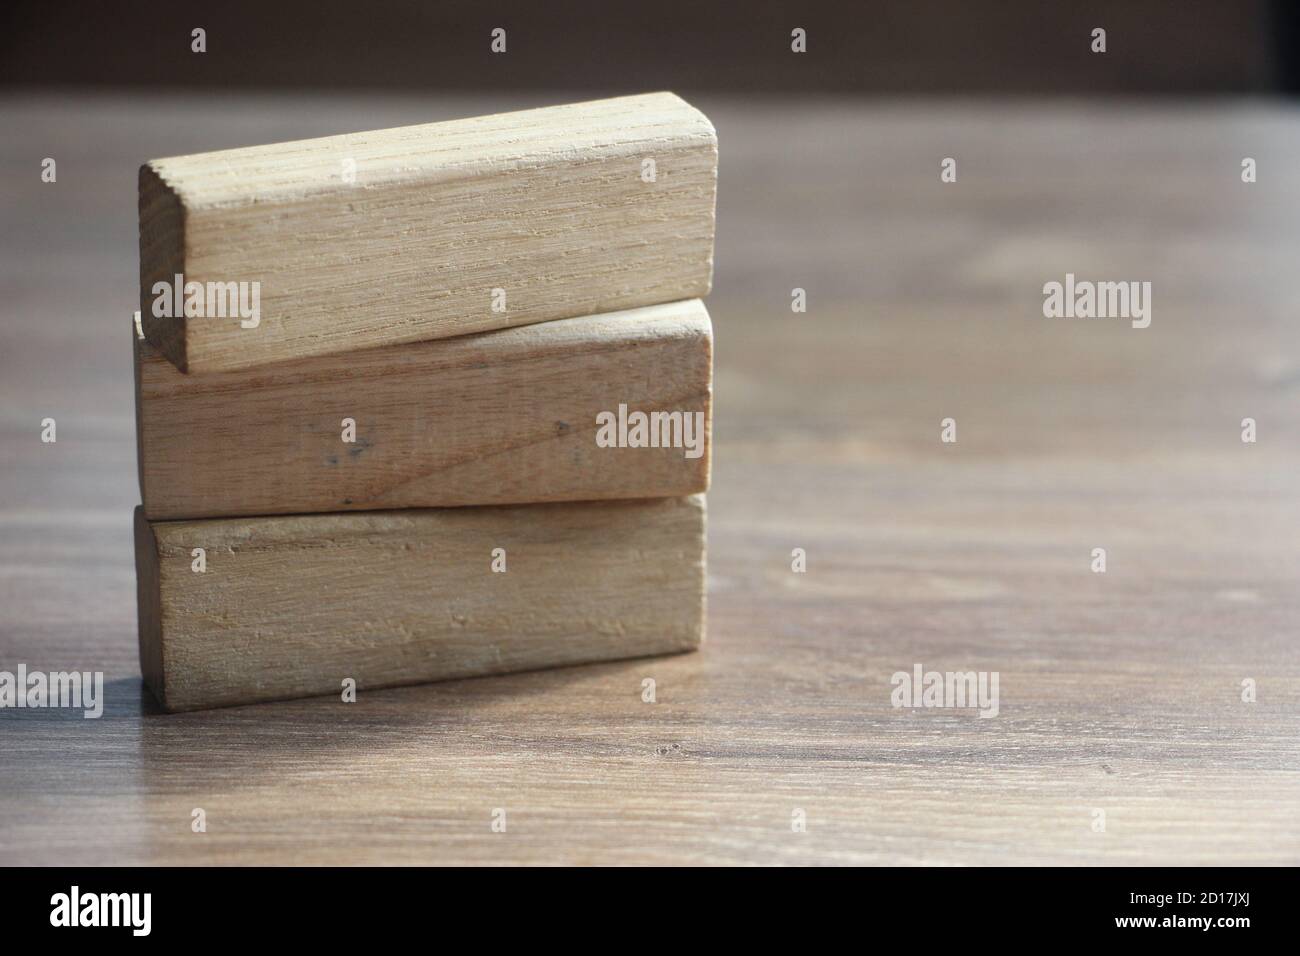 3 largos bloques de madera sobre mesa de madera. Concepto de educación y negocios Foto de stock